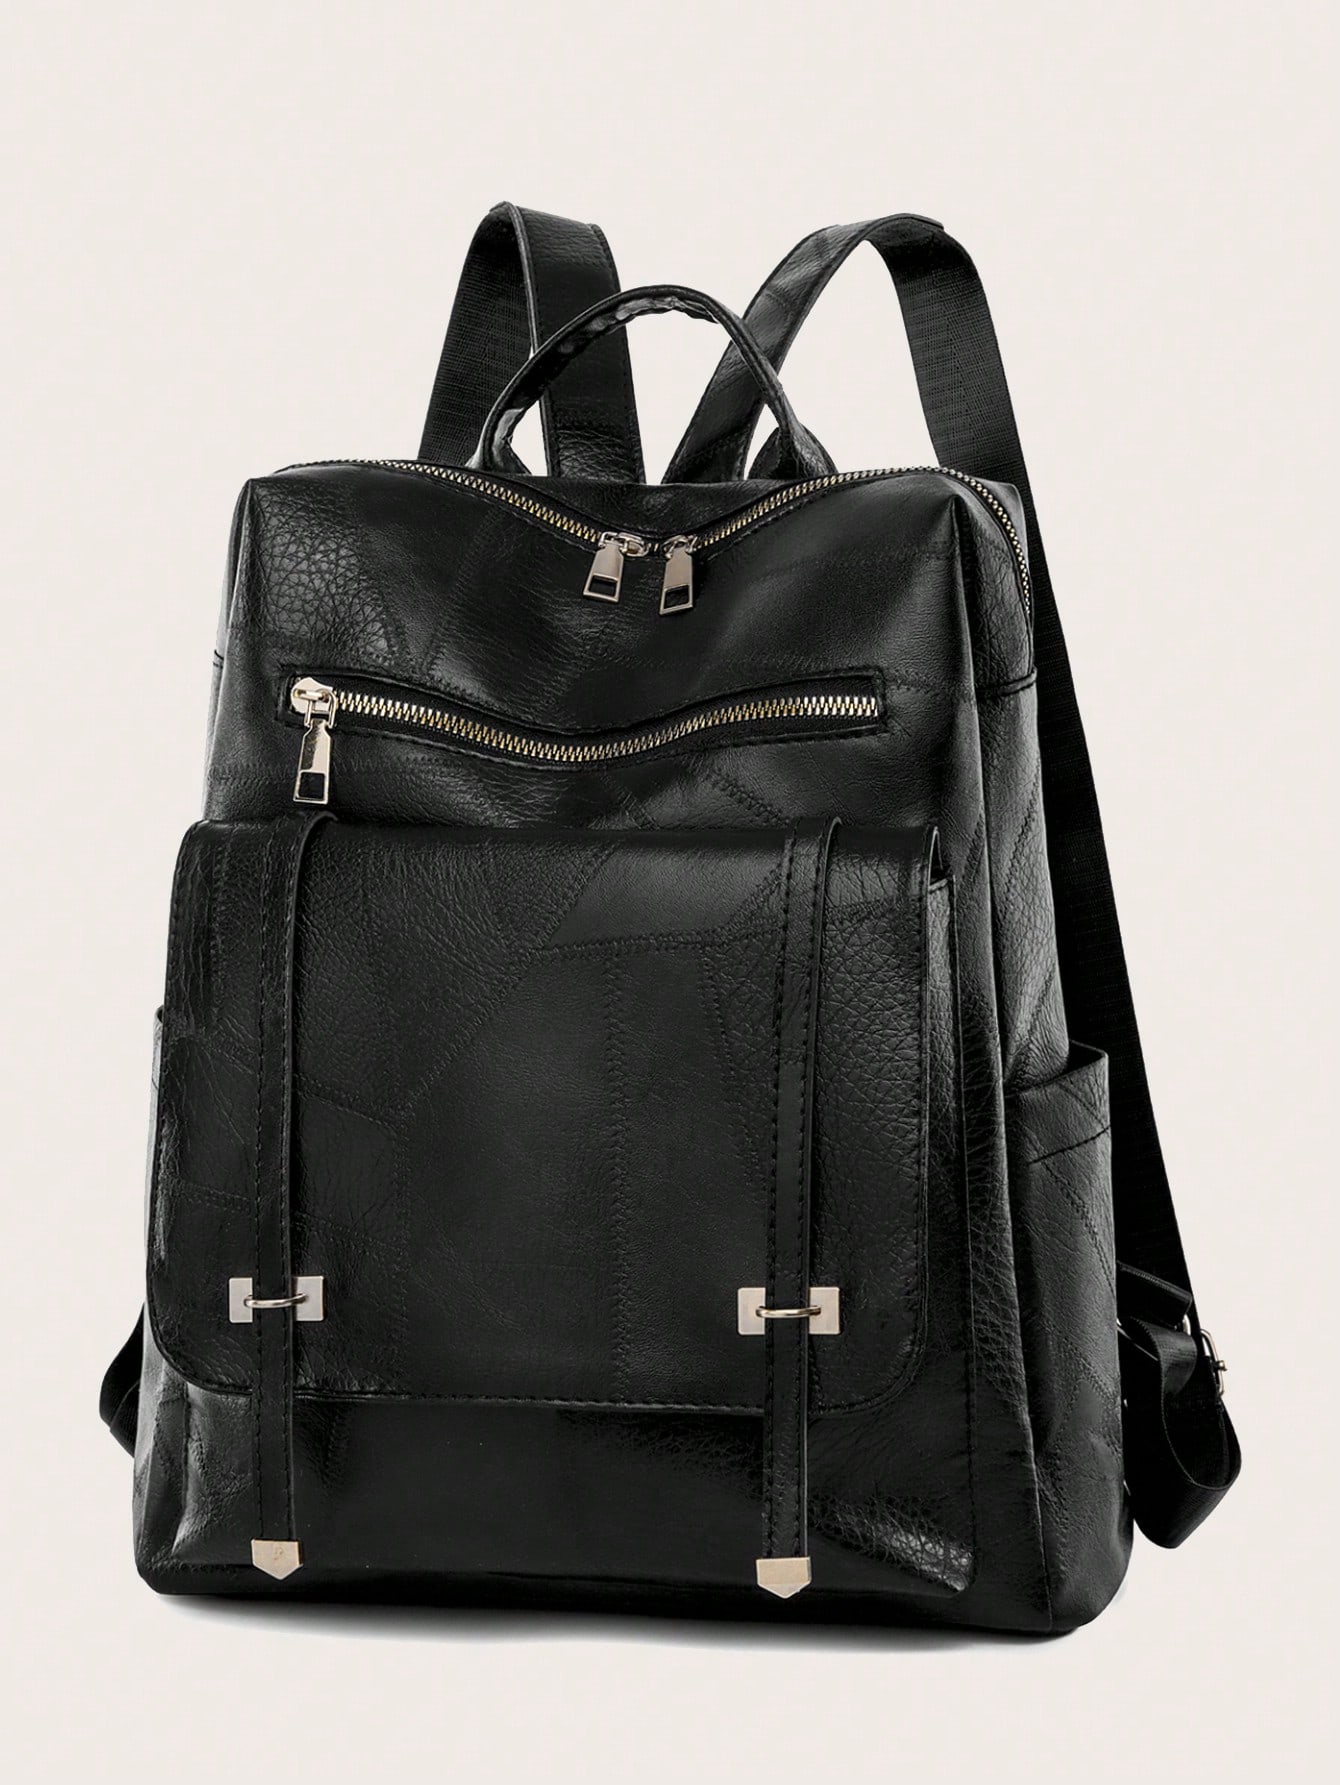 винтажный рюкзак на плечо 17 дюймов с изображением флага фландии Винтажный однотонный кампусный рюкзак двойного назначения на одно плечо для мужчин и женщин, черный